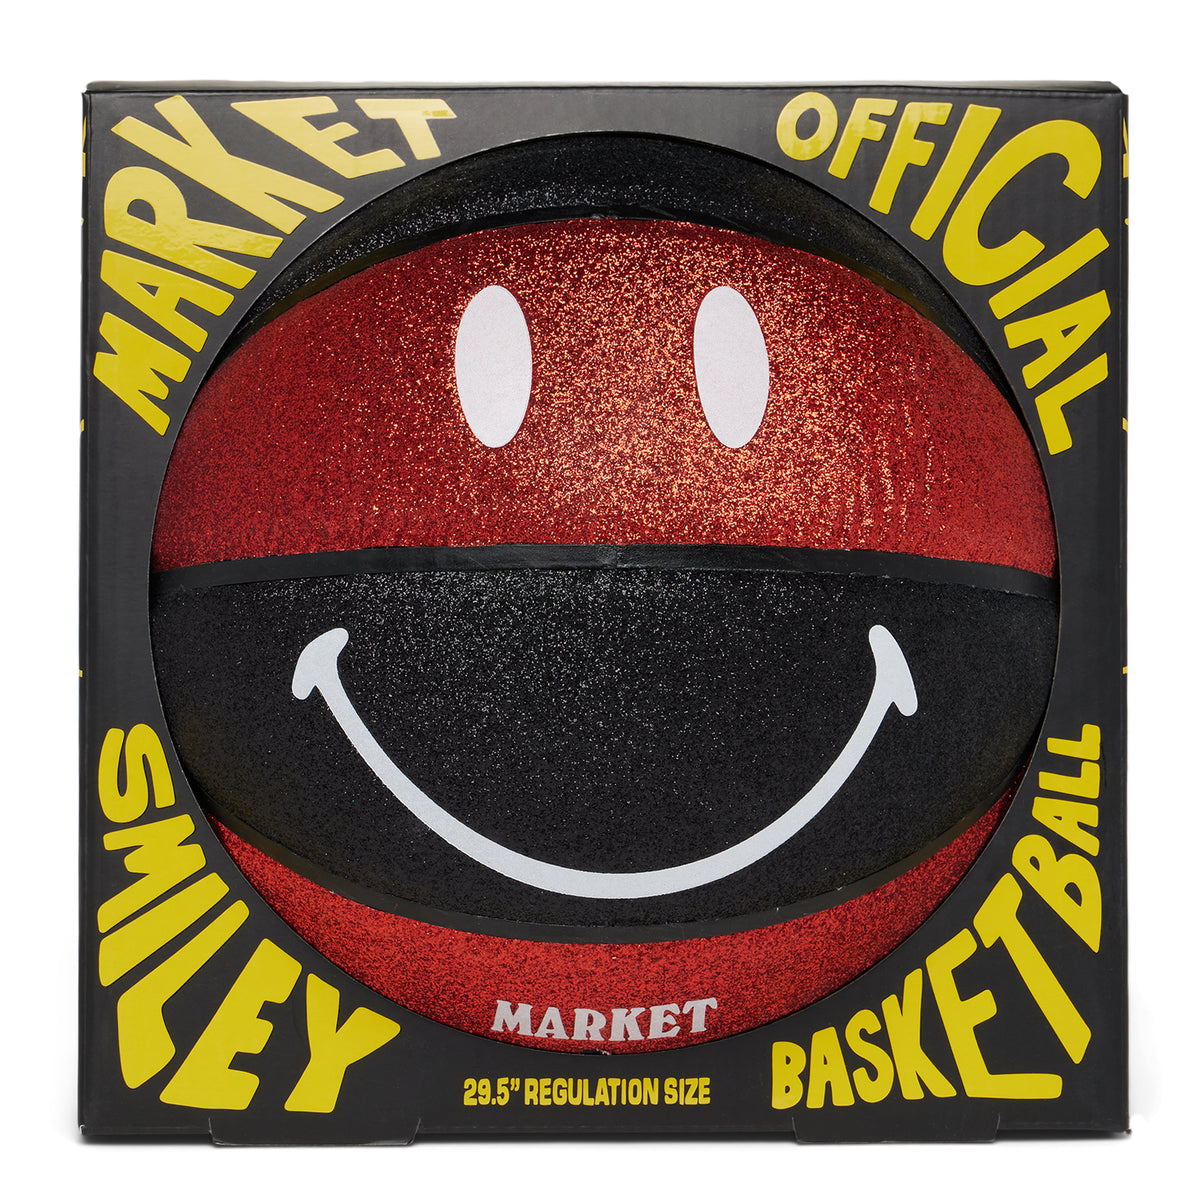 MARKET SMILEY GLITTER SHOWTIME BASKETBALL